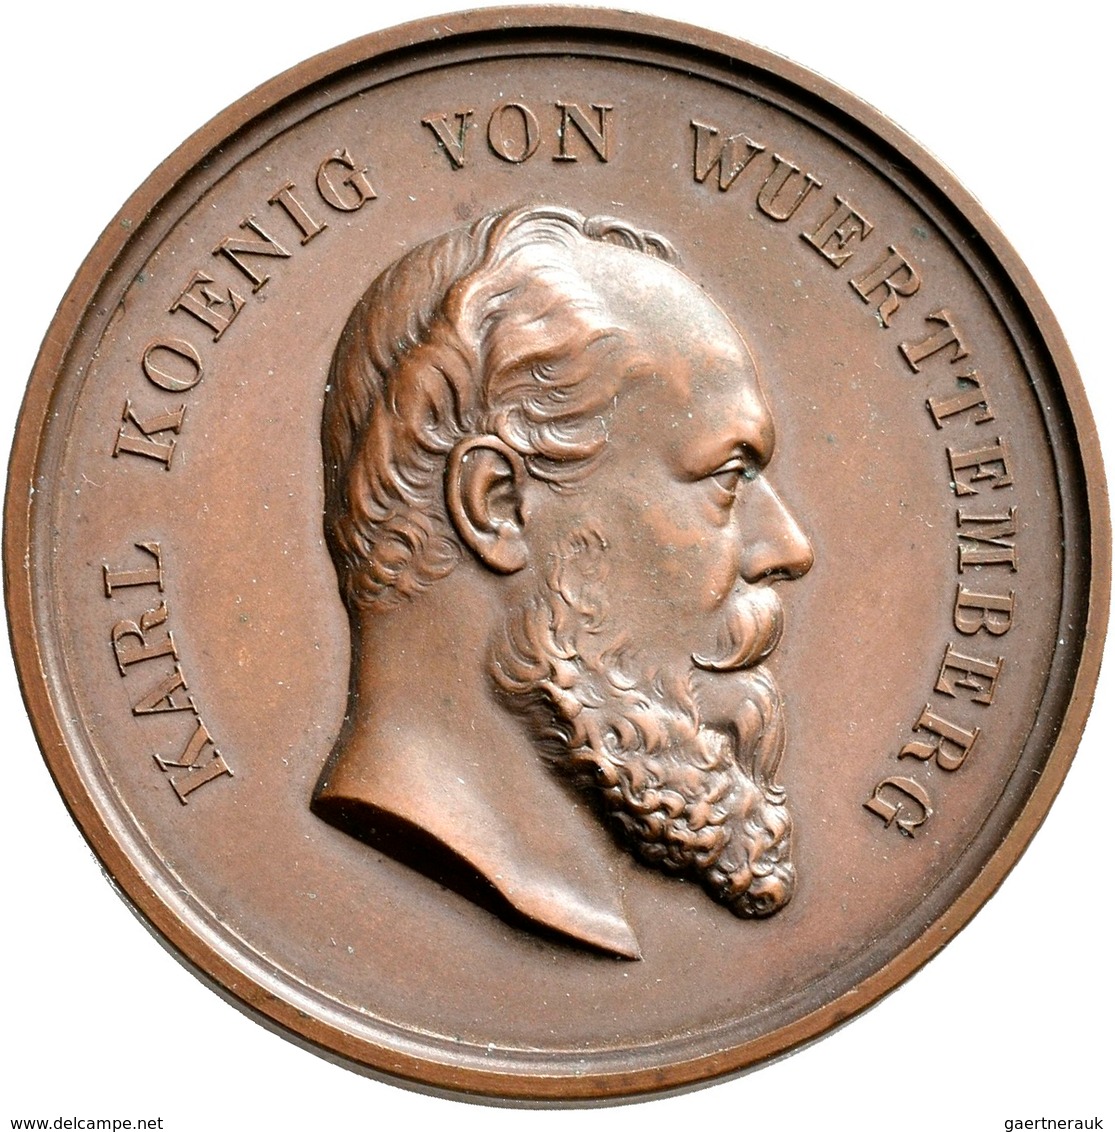 Medaillen Deutschland: Lot 10 Medaillen; davon 9 Exemplare vom königlich württembergischen Hofmedail